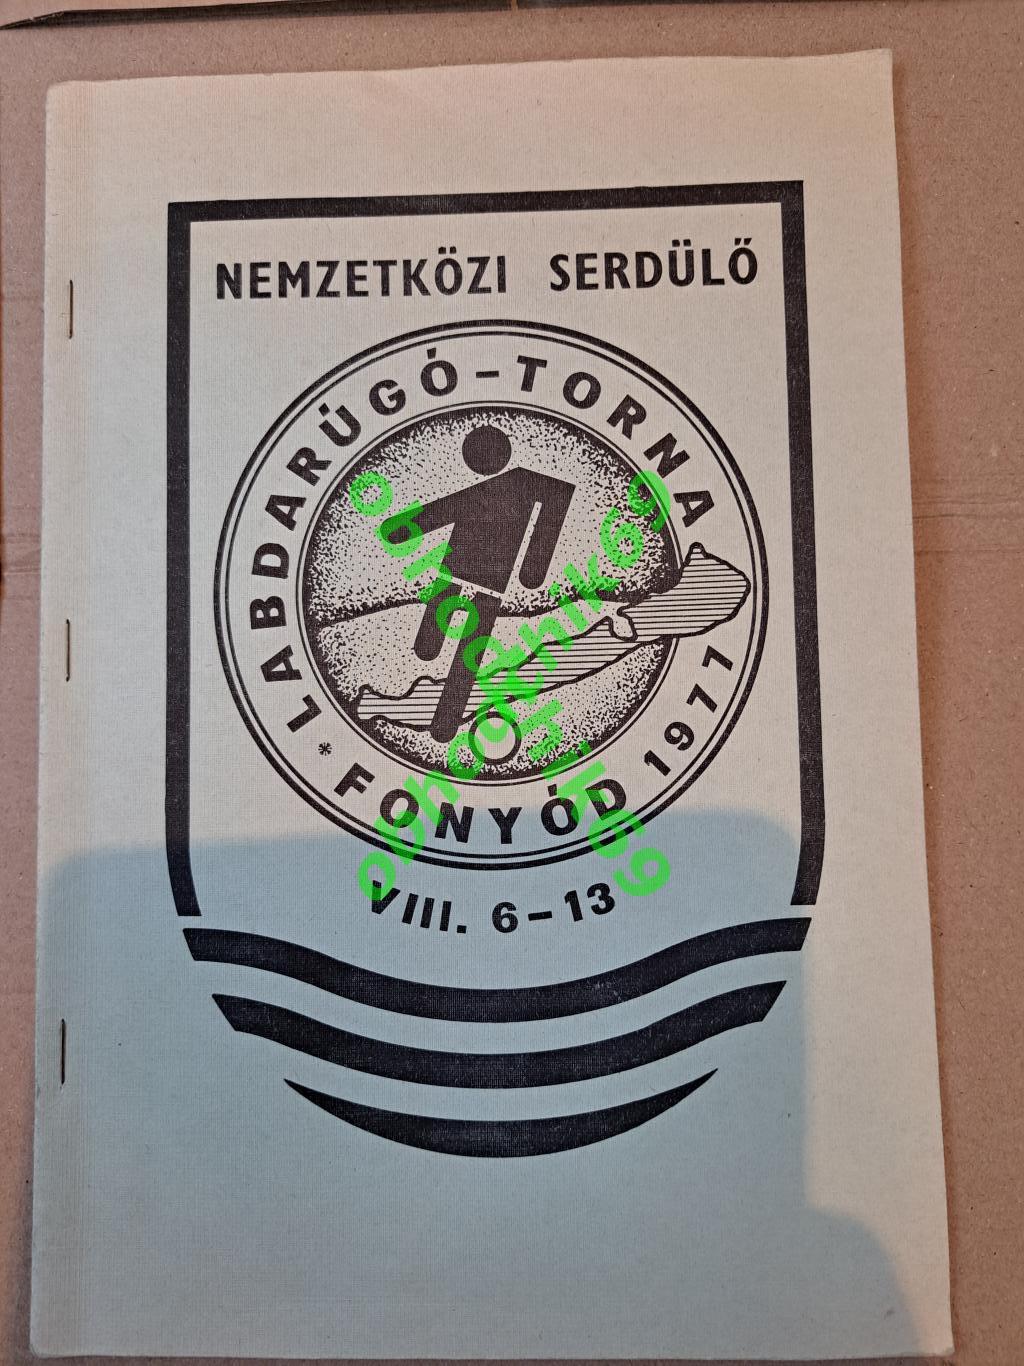 Турнир Балатон / Фоньод Венгрия (U-20 молодежная сборная) 06-13.08 1977